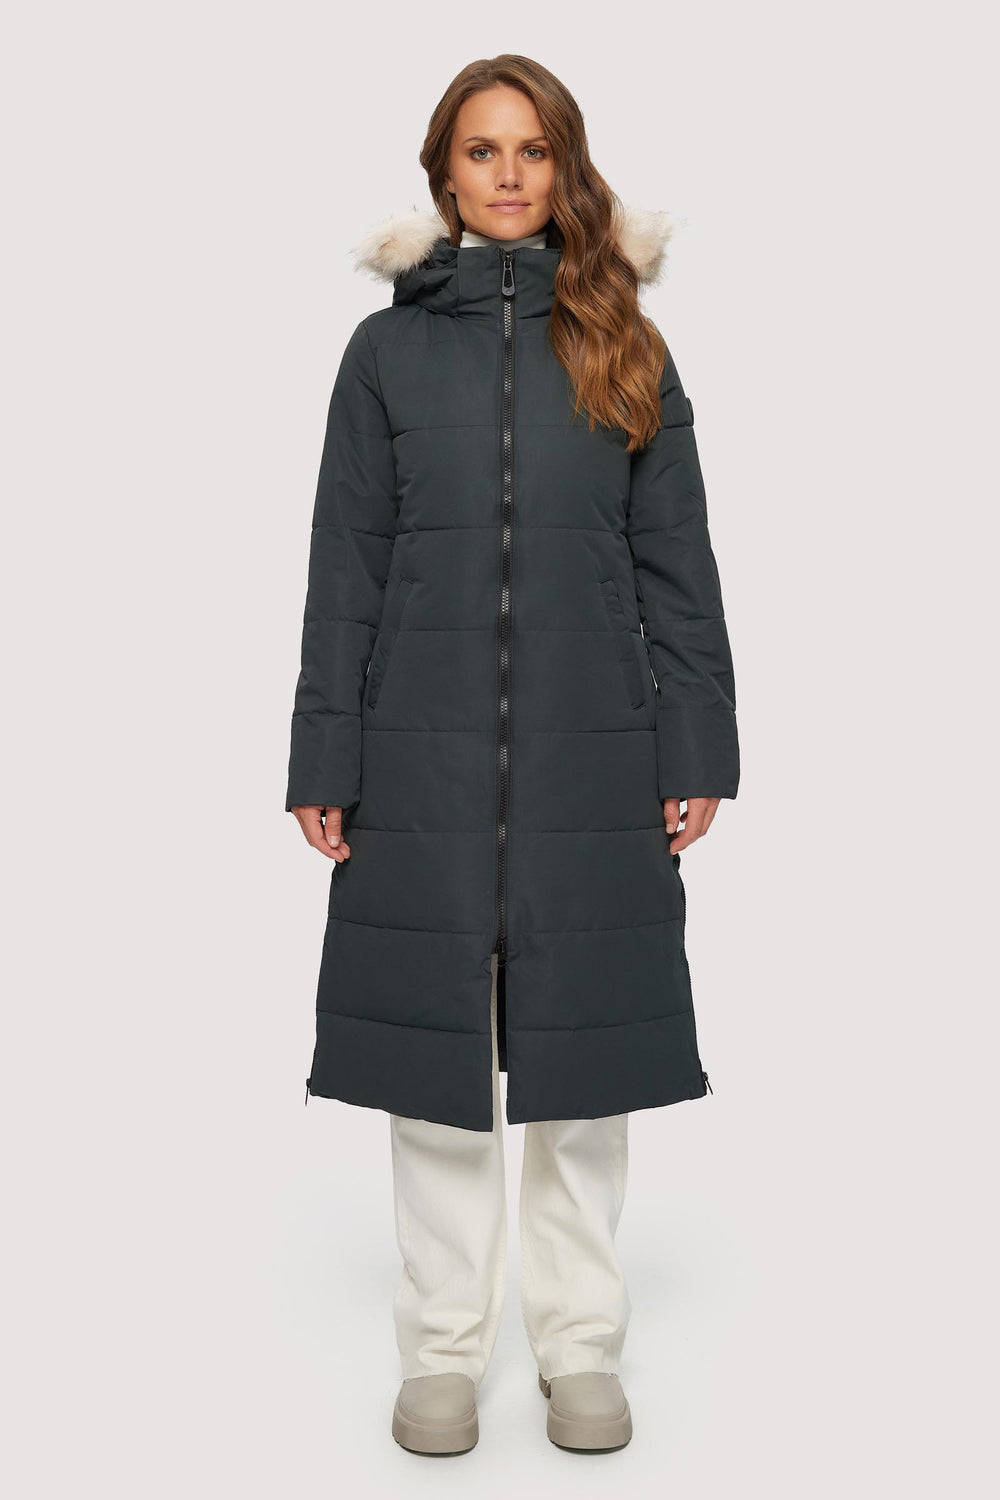 AMDBEL Coats for Women Trendy Warm Fleece Lined Long Parka Jacket